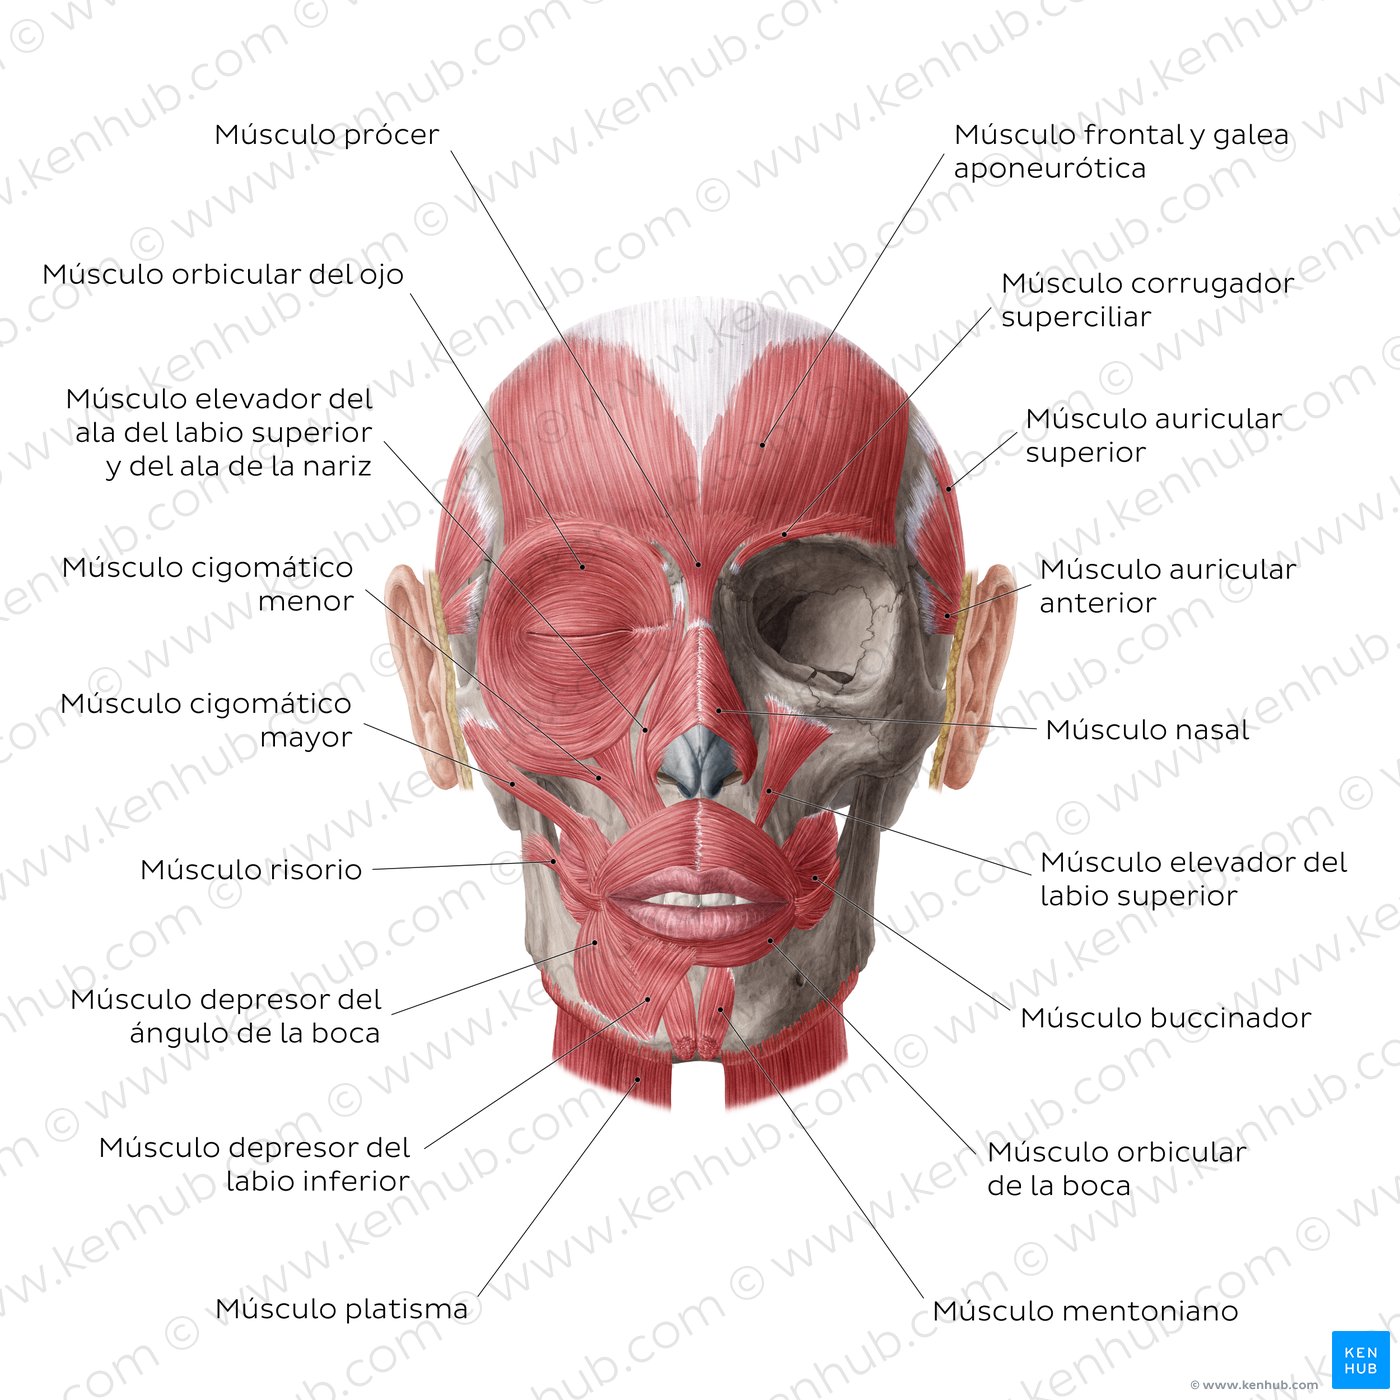 Cara humana: anatomía, estructura y función | Kenhub